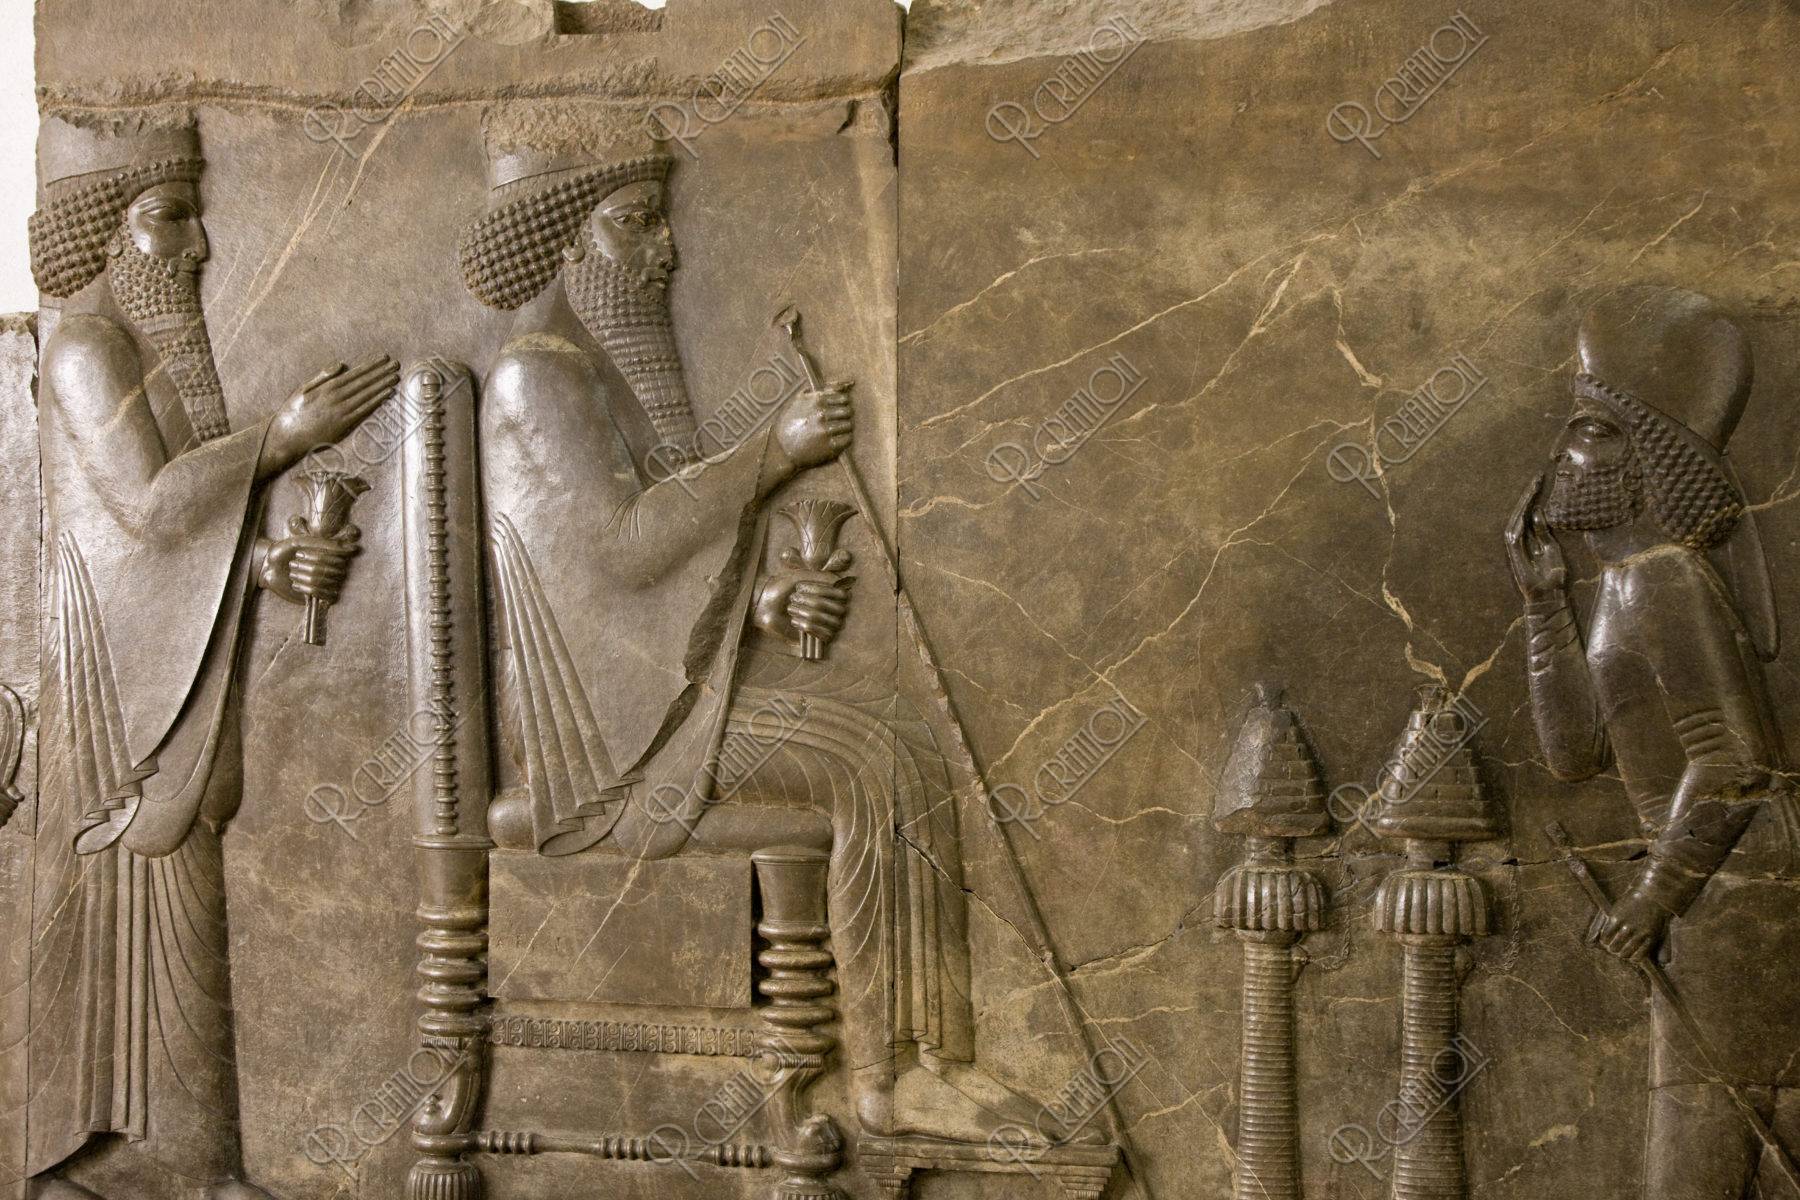 イラン考古学博物館 ダレイオス1世の謁見図 写真 アールクリエーション